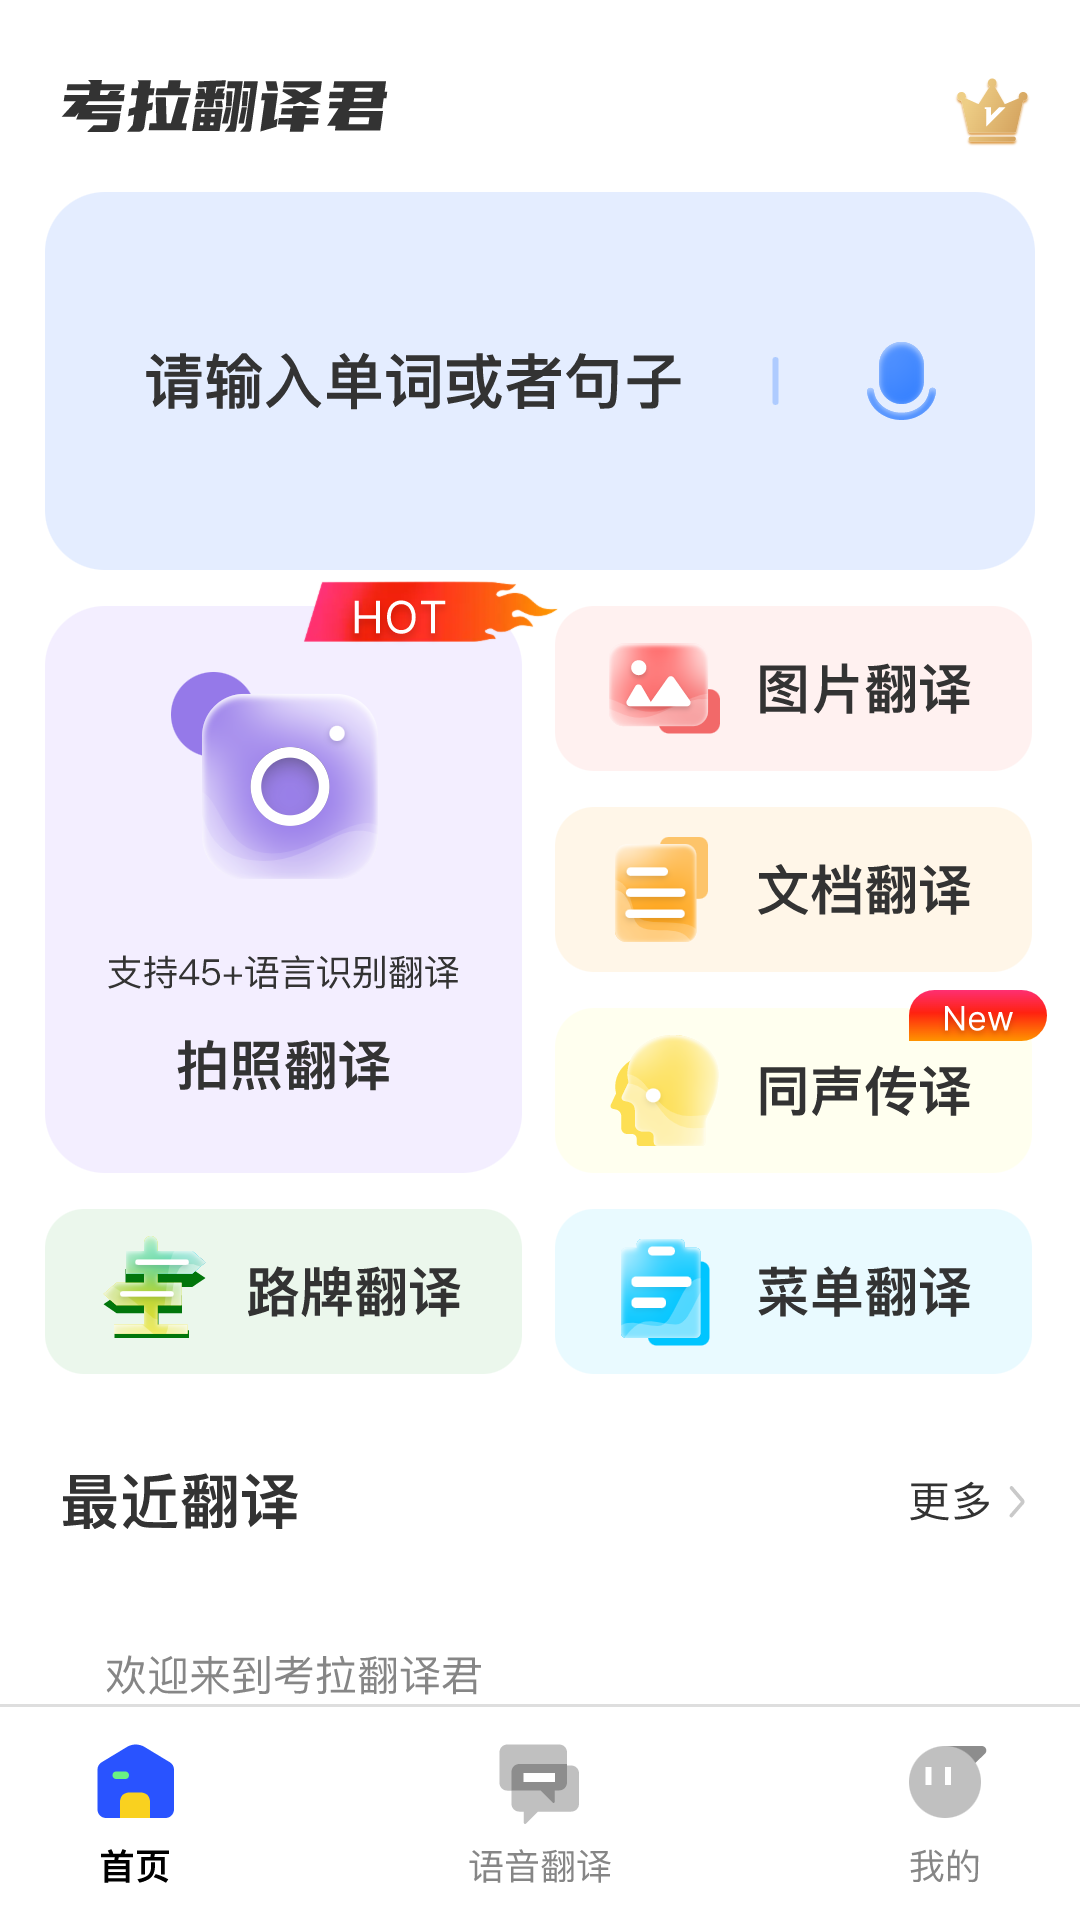 考拉翻译君app下载,考拉翻译君app最新版 v1.0.1